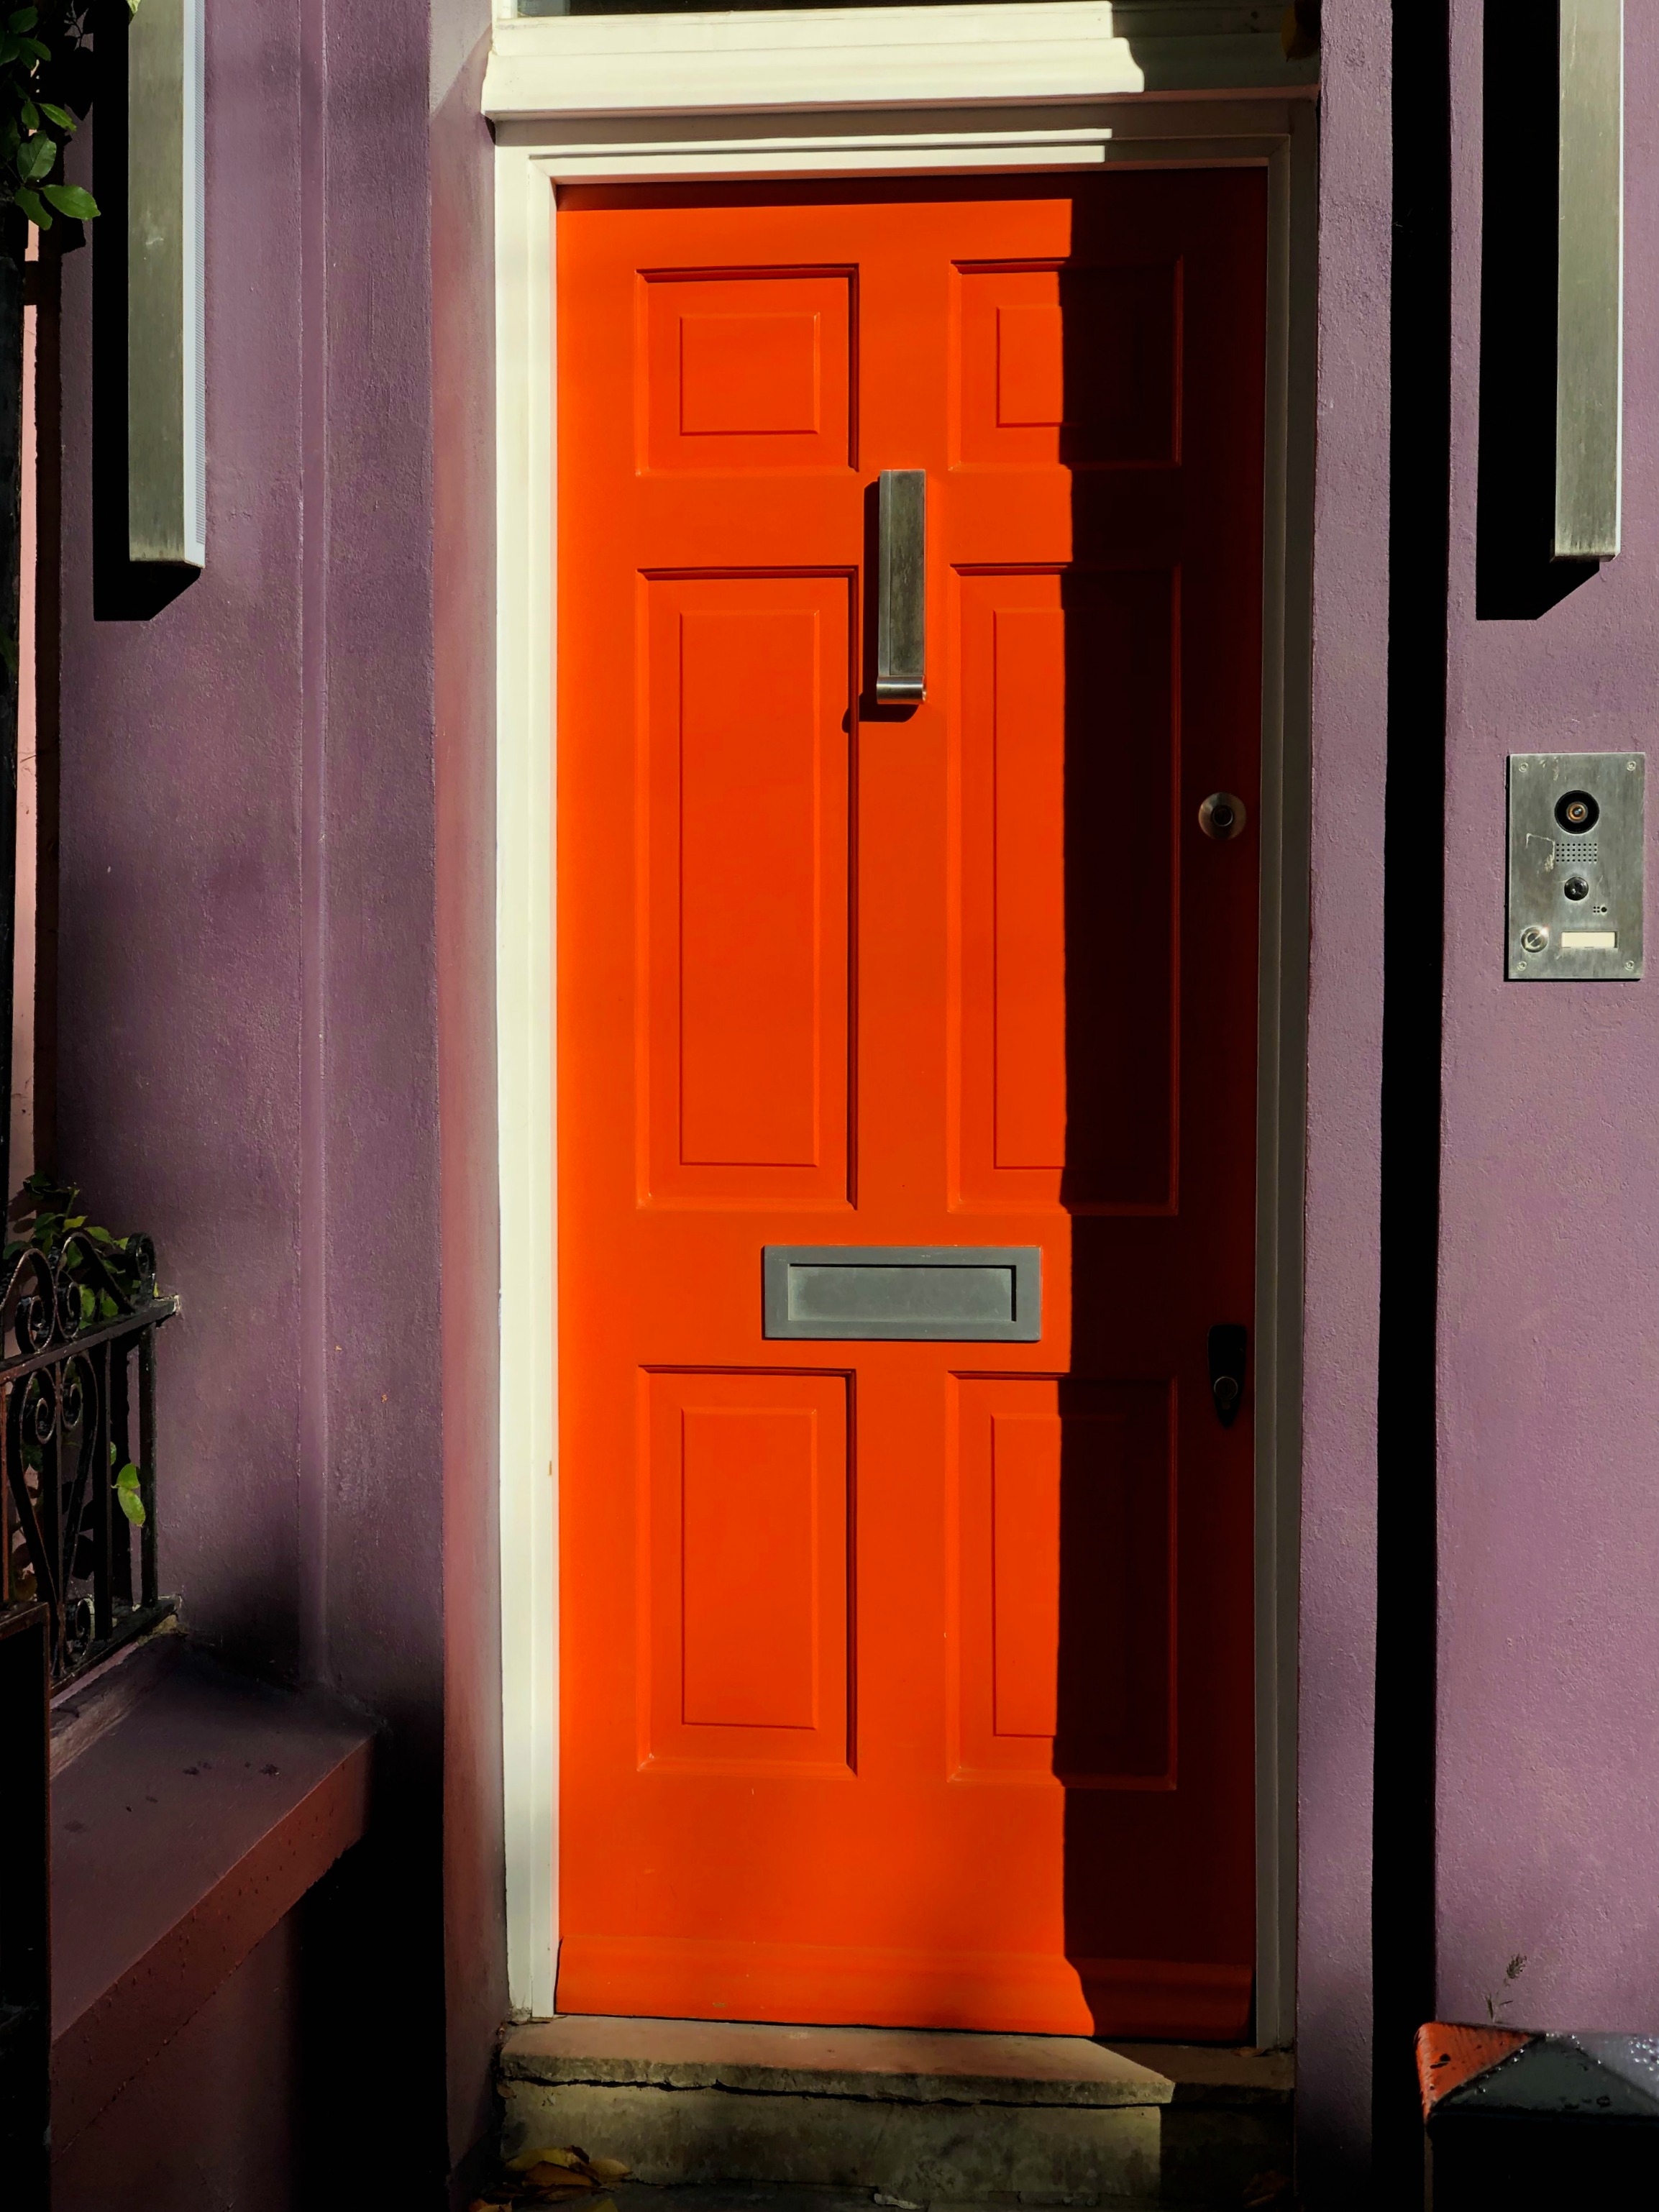 Blog - Notting Hill - Orange.jpg